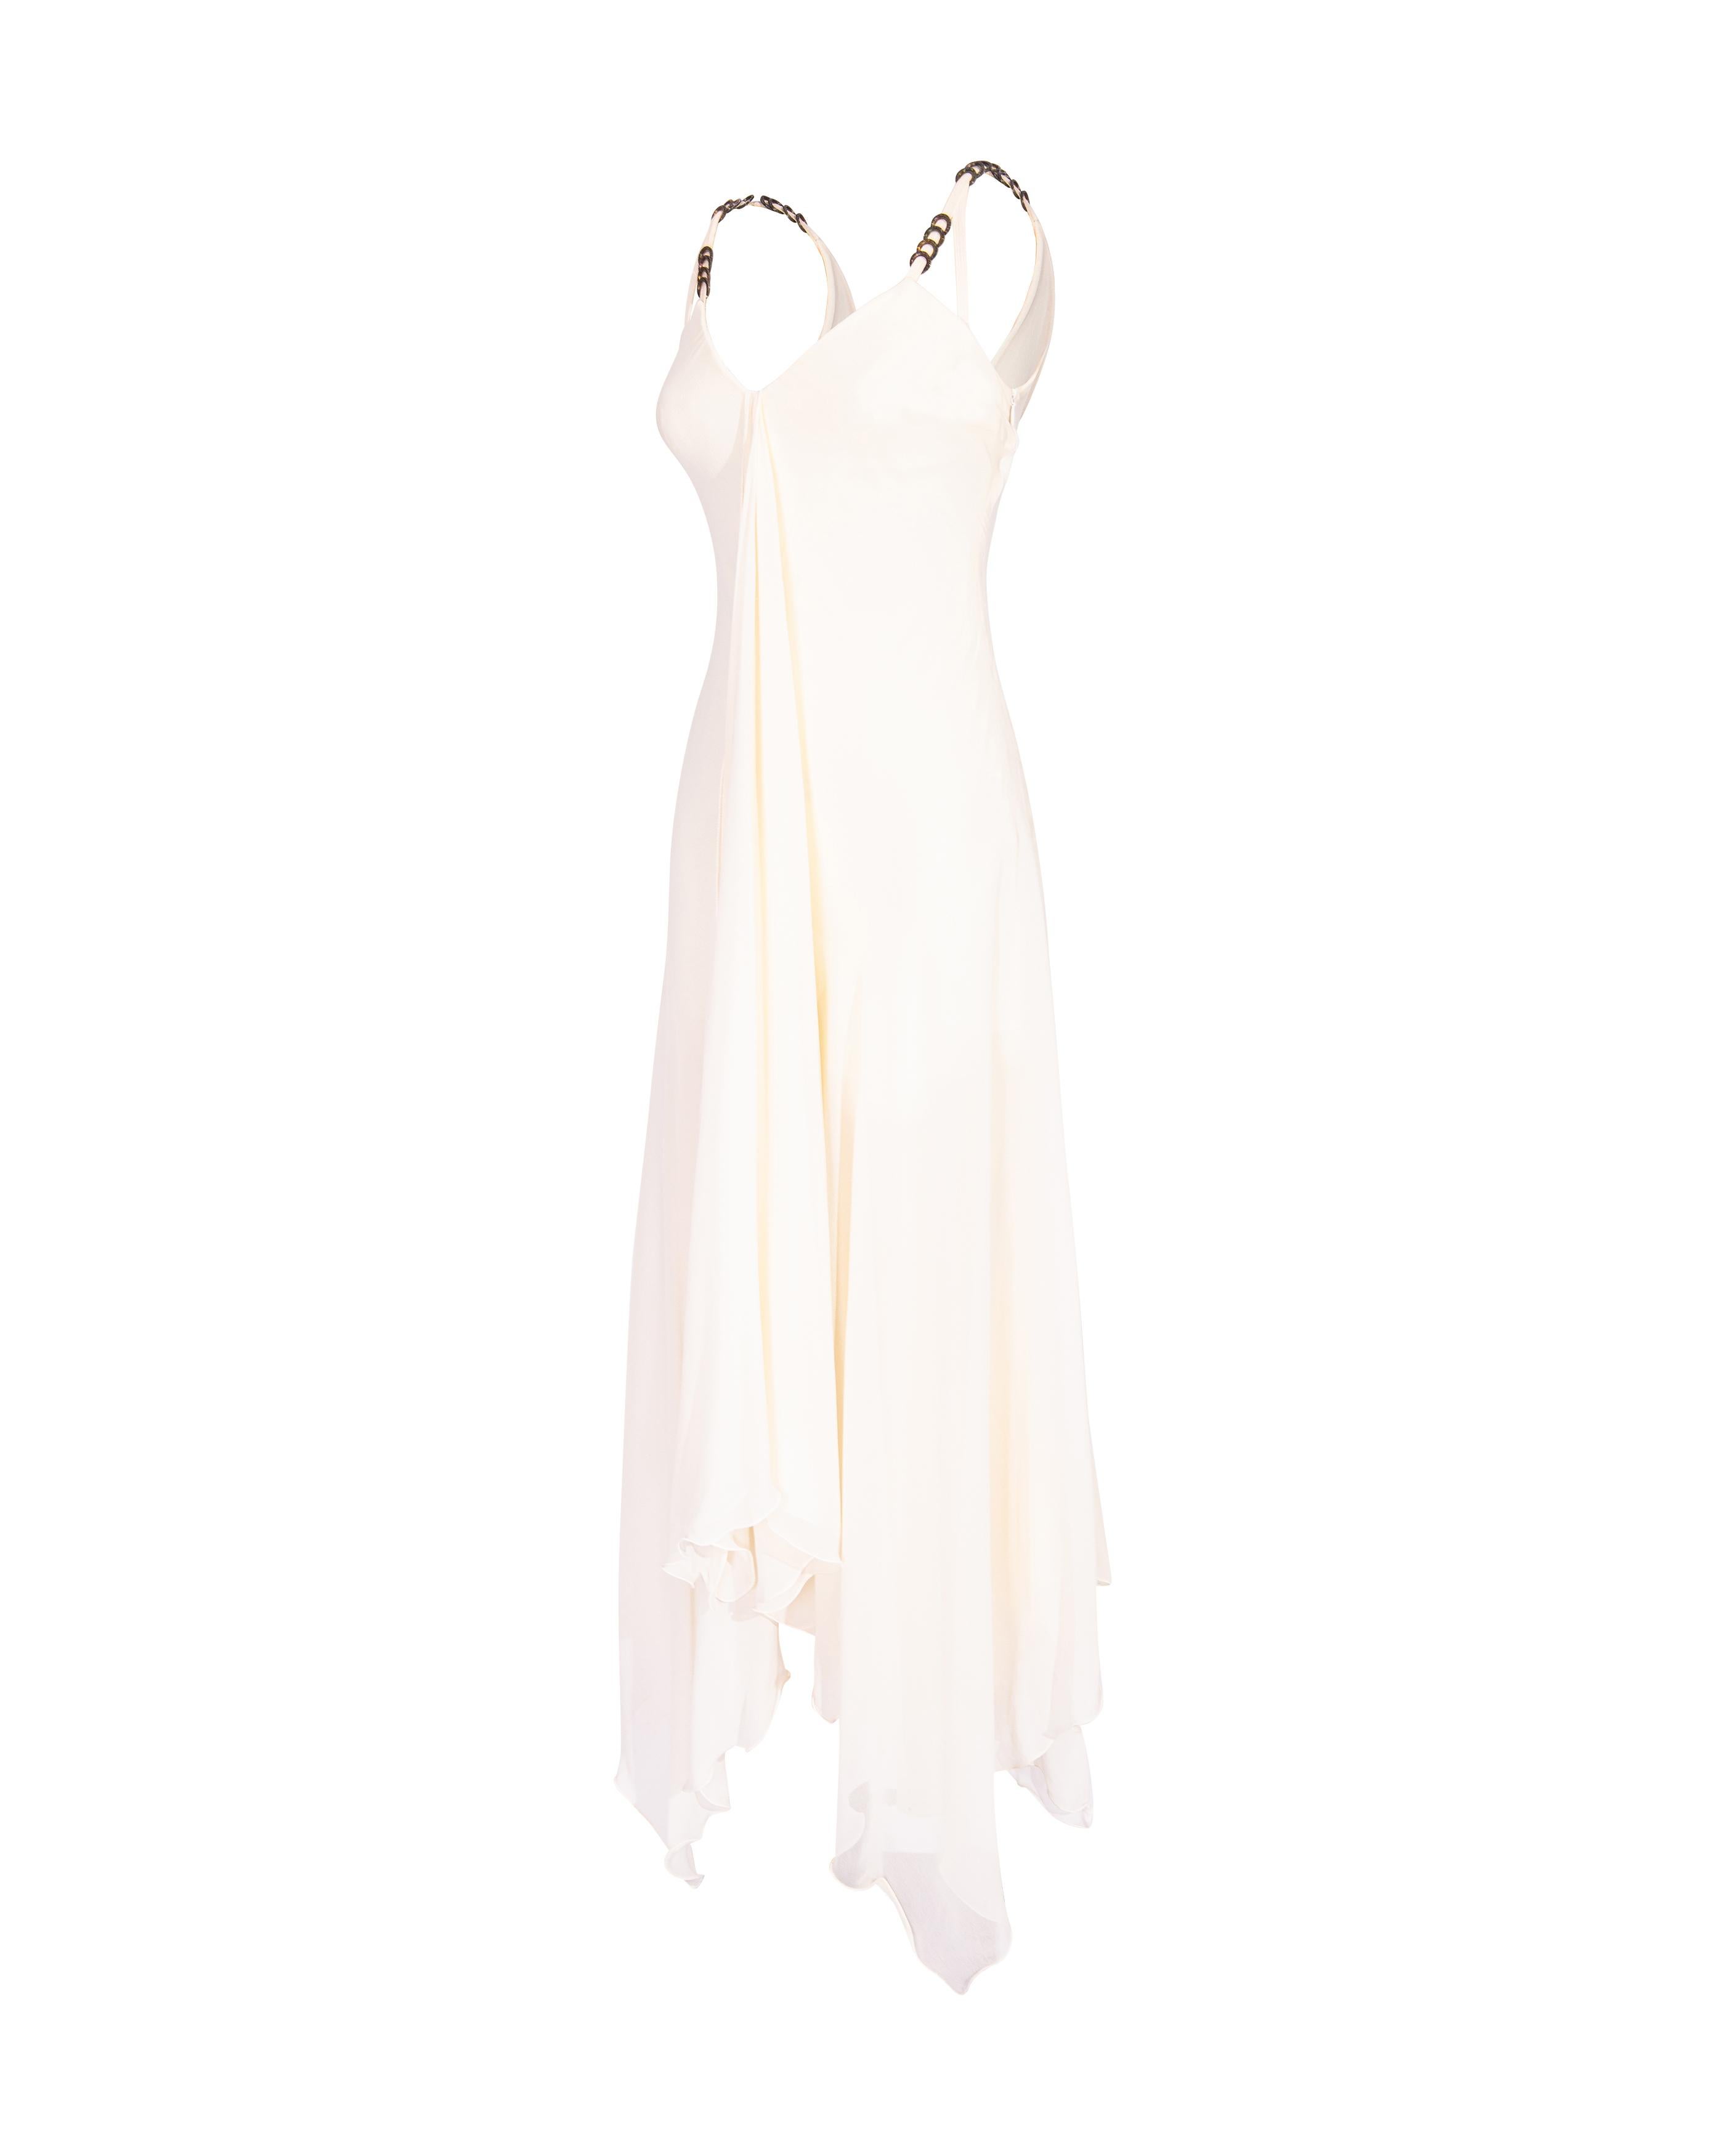 F/S 1995 Gianni Versace Couture Seiden-Chiffon-Kleid mit drapierter Vorderseite aus Seide (Weiß)